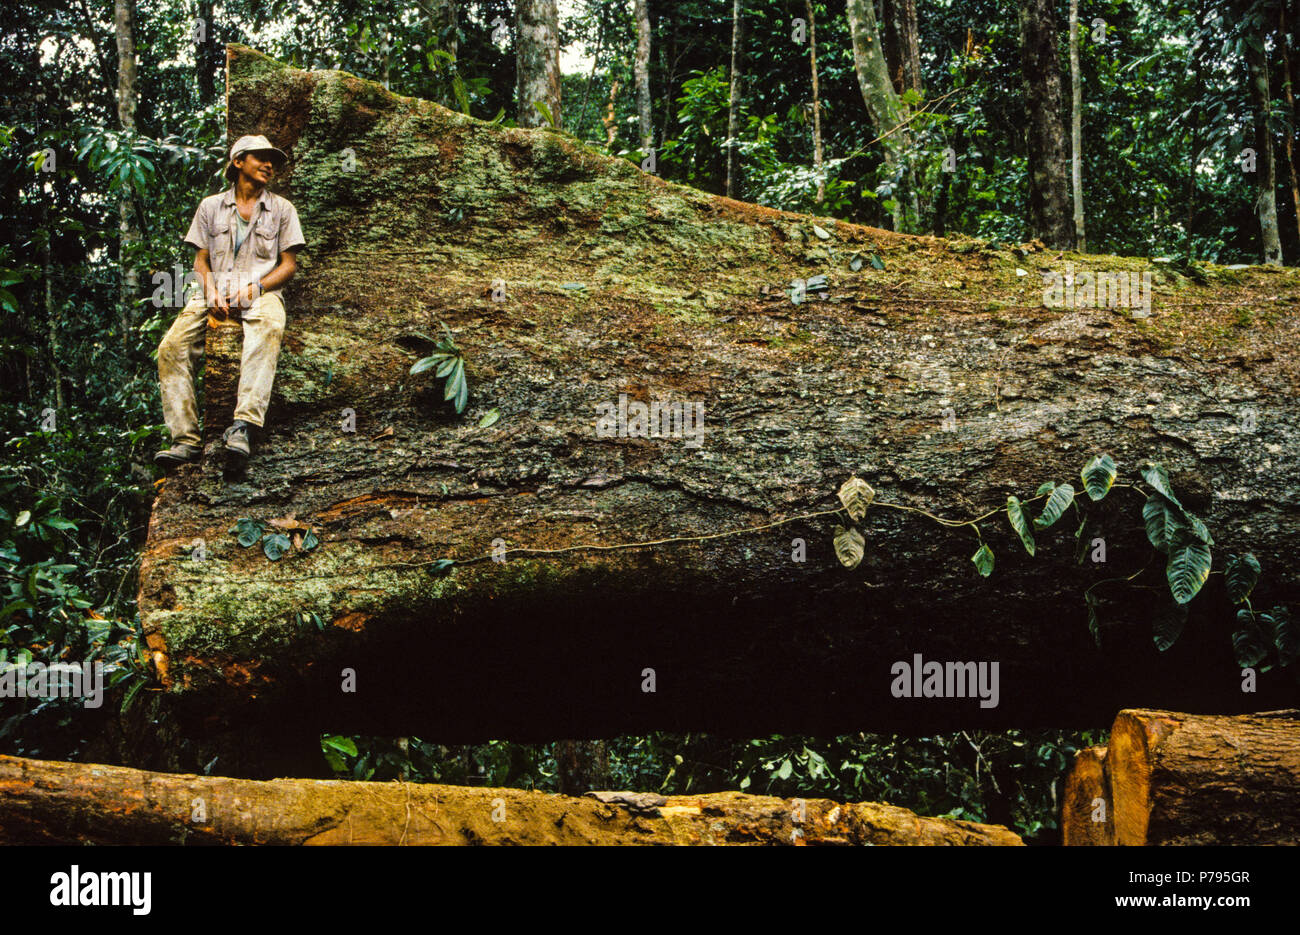 Trabajador de madera sentado en árbol de caoba registrado, para la importación en el Reino Unido, Paragominas, en Pará, Brasil, América del Sur. Foto de stock